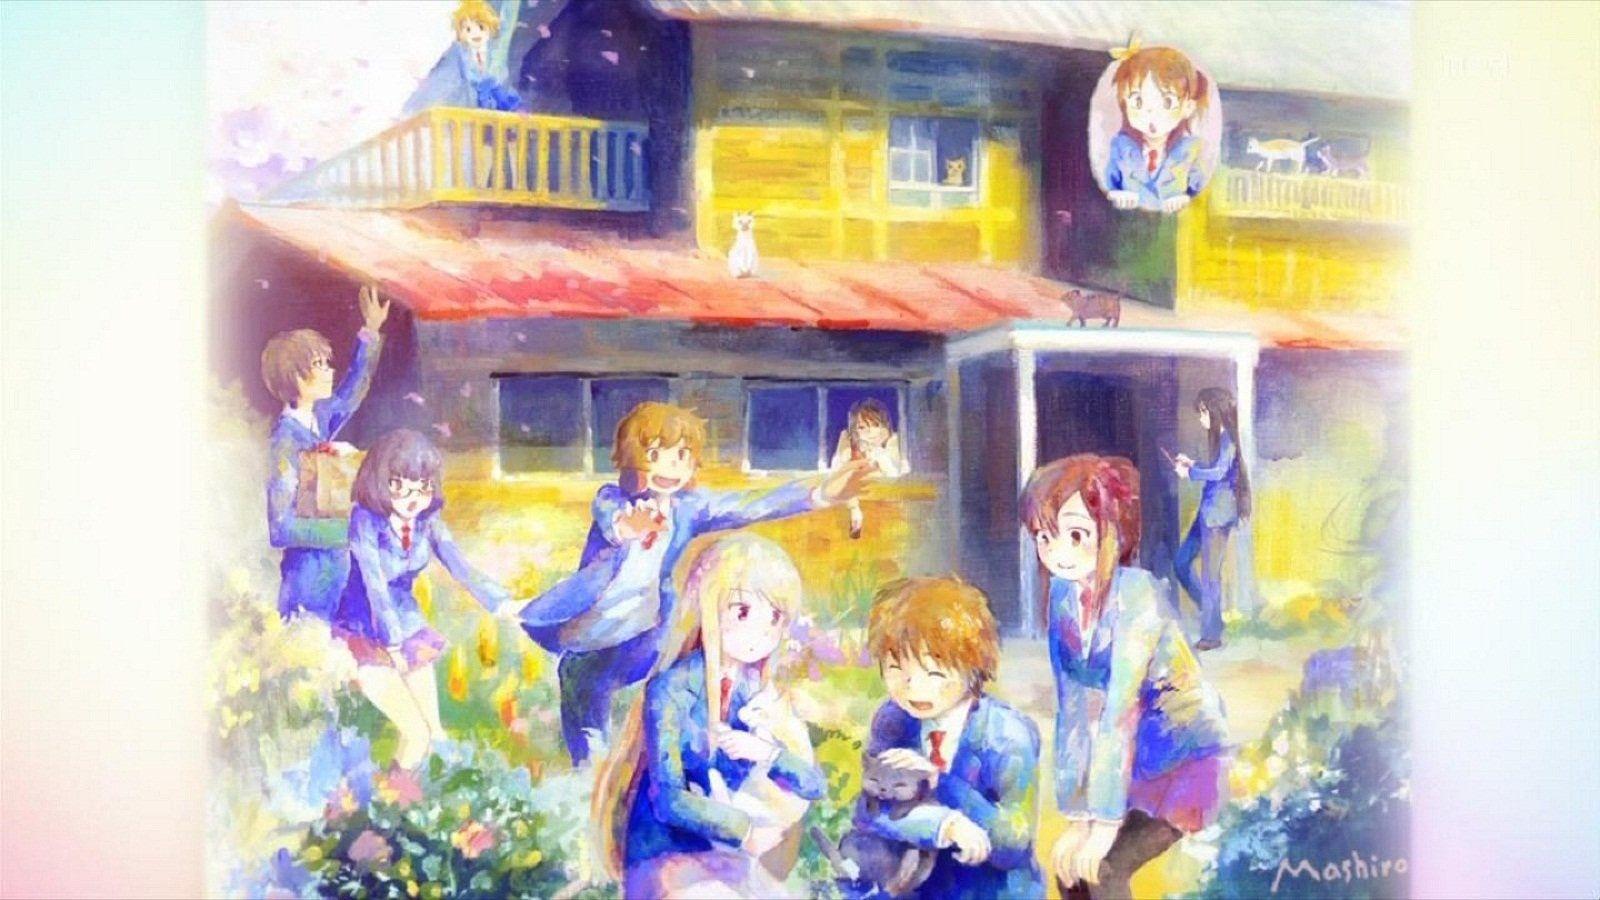 40+ Wallpaper Anime Sakurasou keren tahun 2019